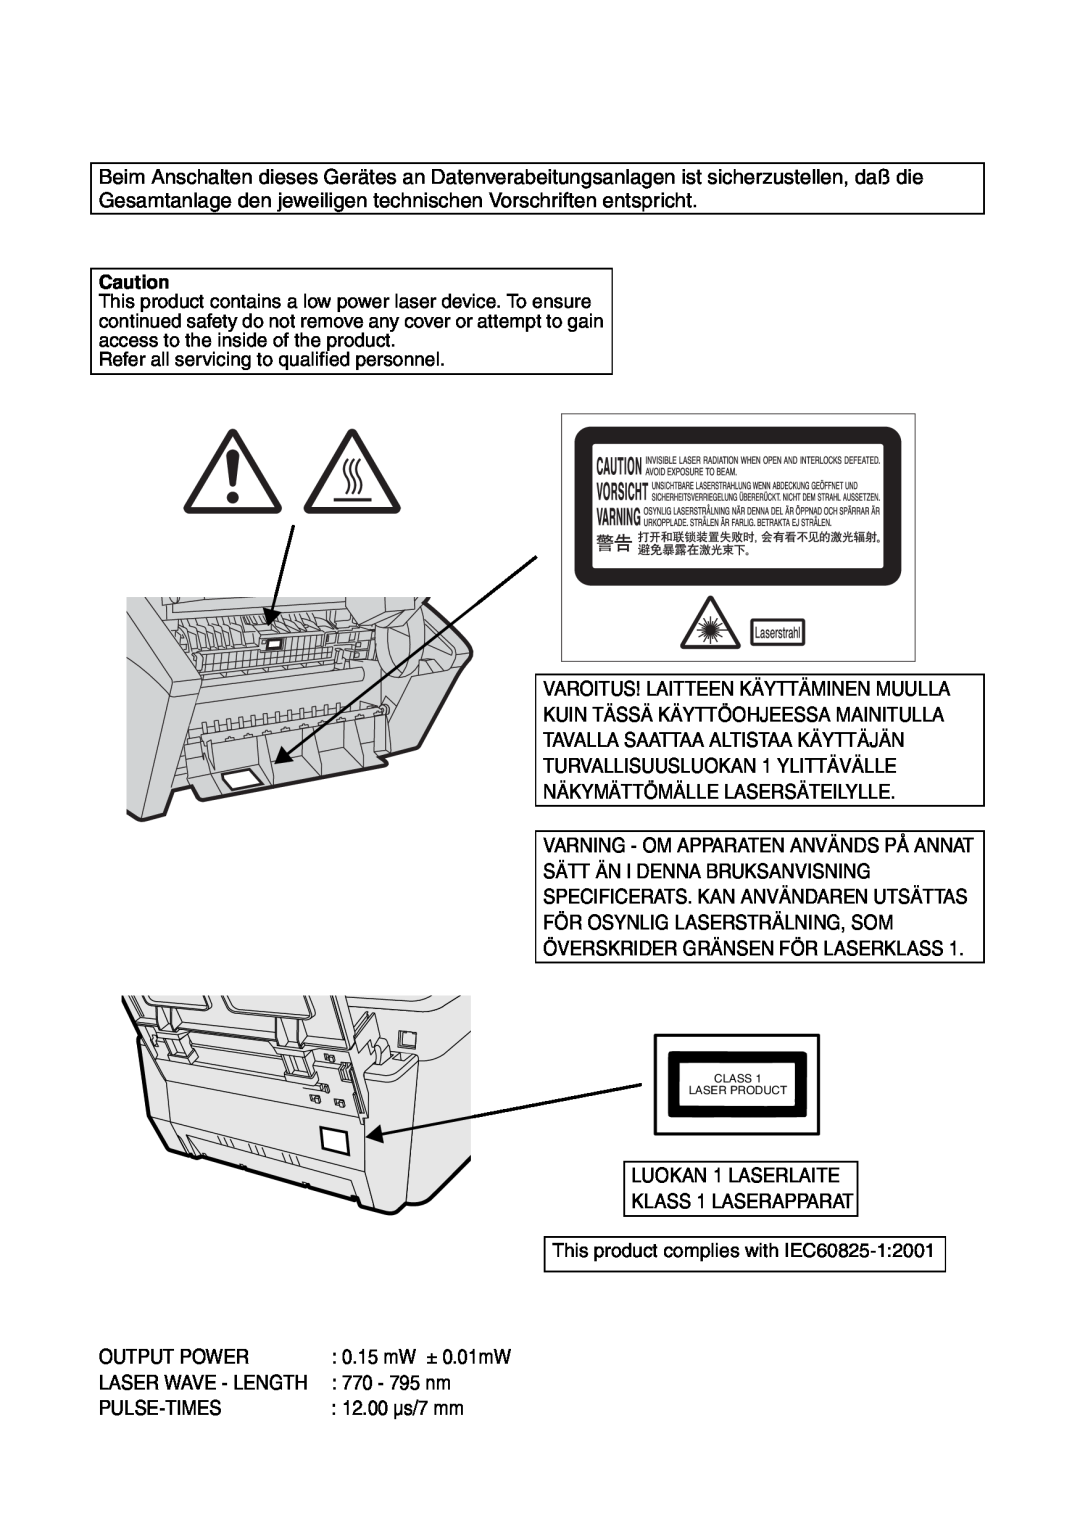 Sharp FO-IS115N operation manual Varoitus! Laitteen Käyttäminen Muulla 